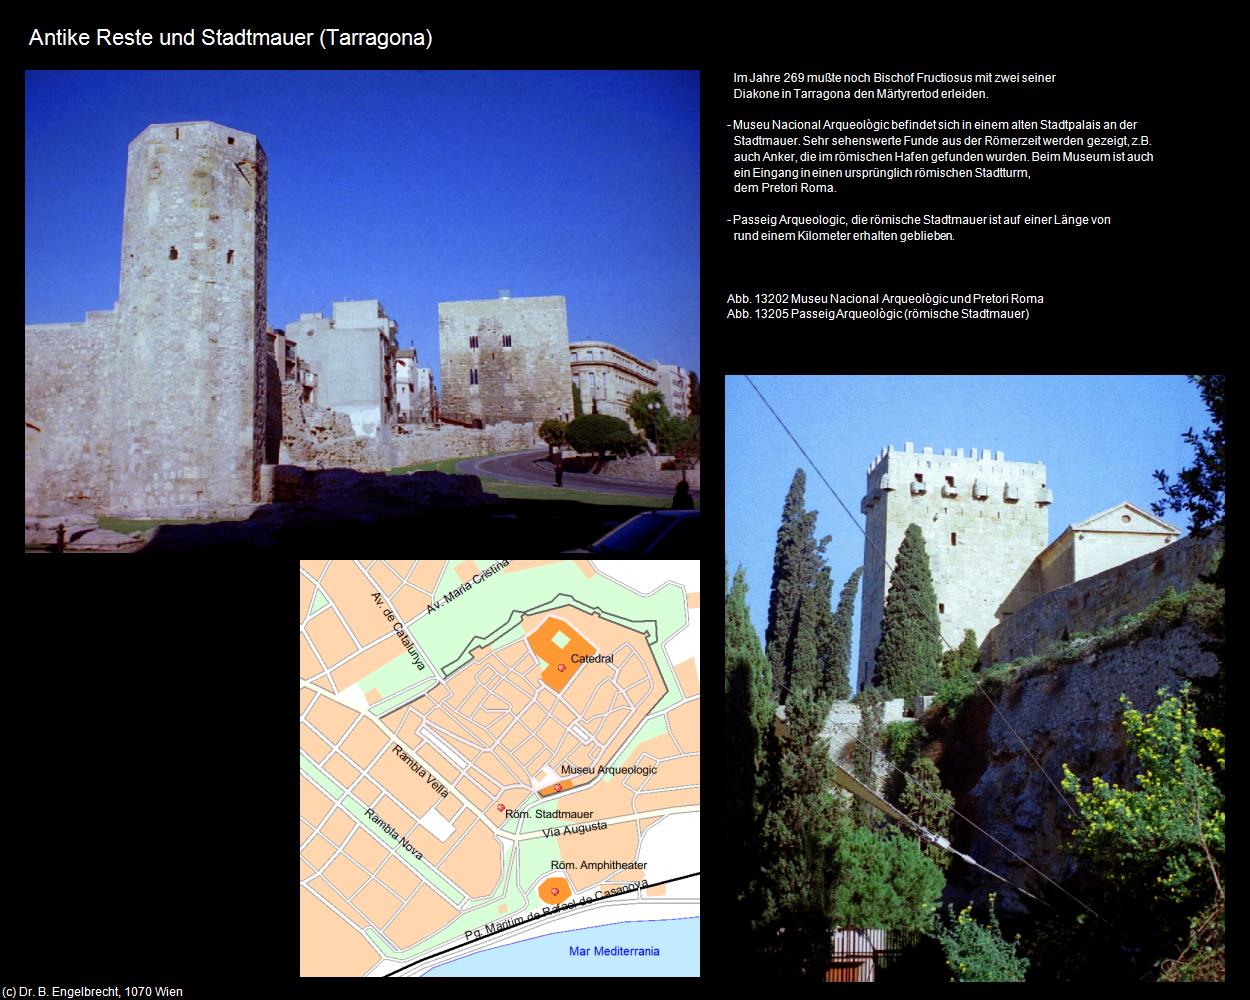 Antike Reste und Stadtmauer (Tarragona) in KATALONIEN